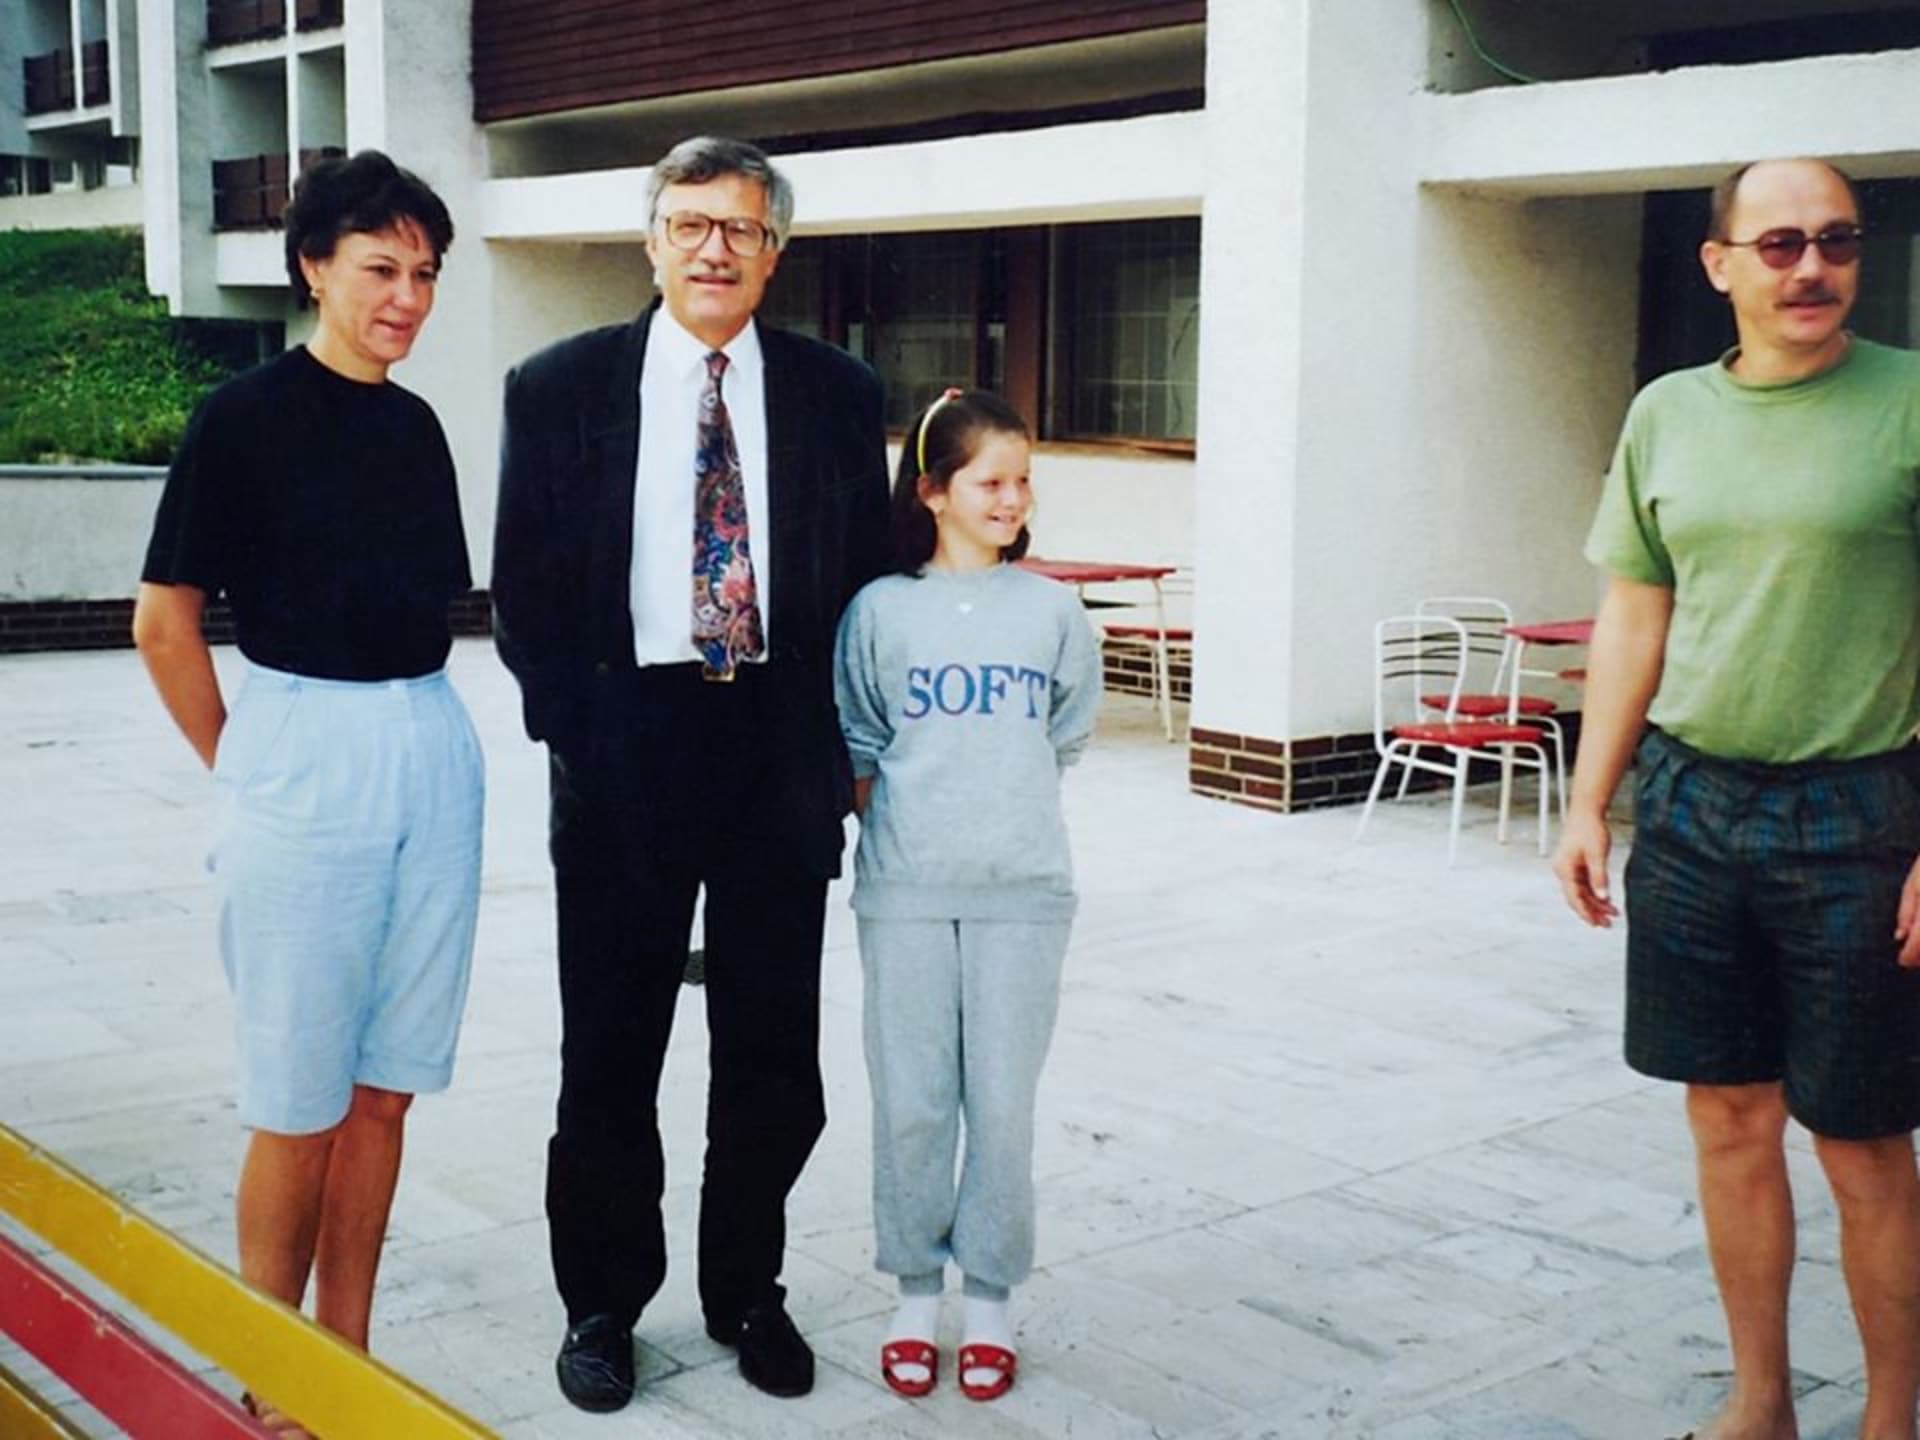 Tehdy jedenáctiletá Jana Maláčová v šedivé soupravě stojí po levém boku exprezidenta Václava Klause.